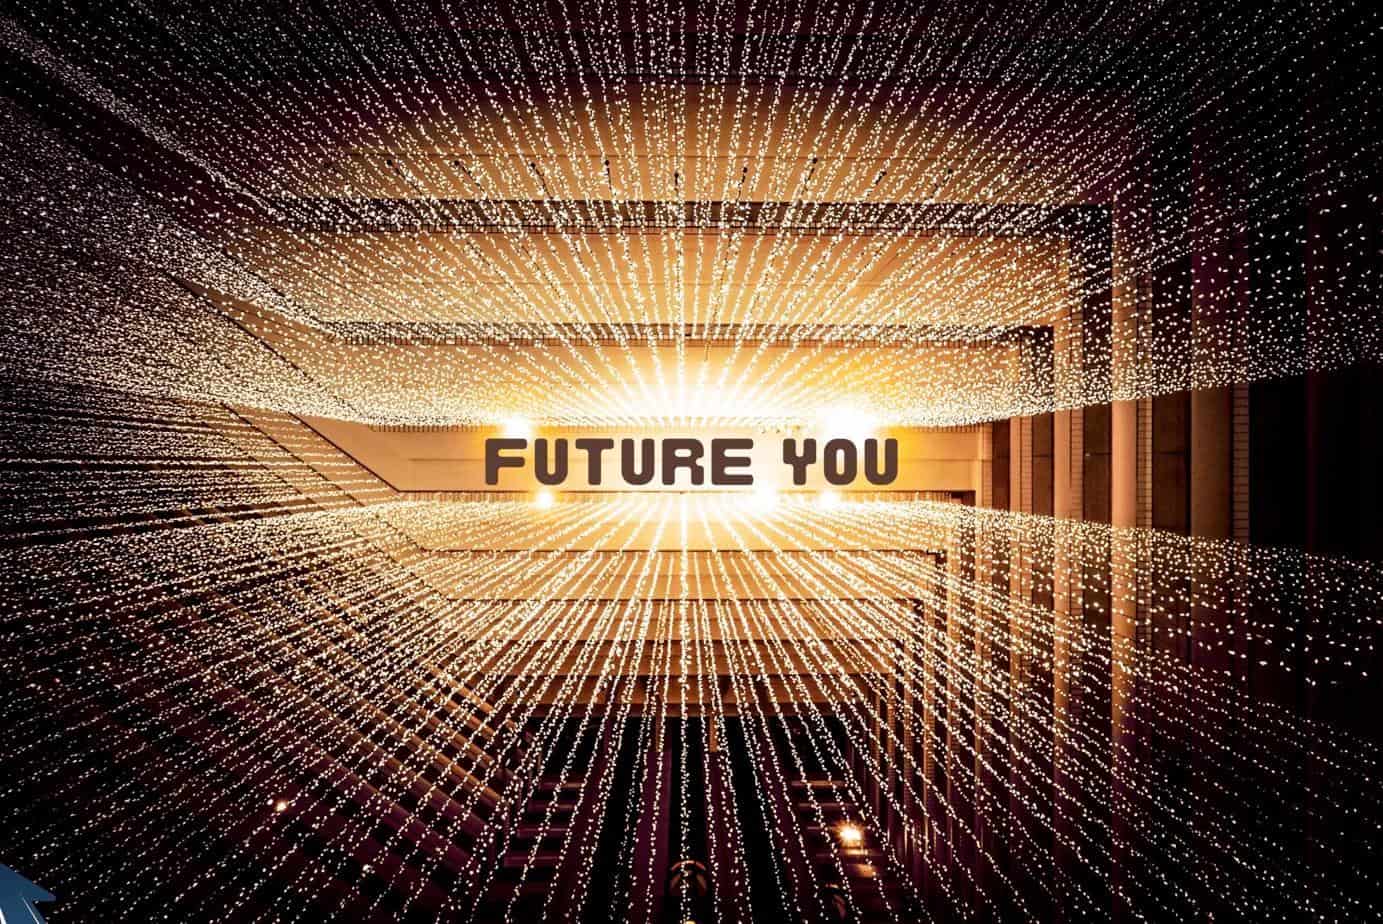  Future You: Future Self Workshop